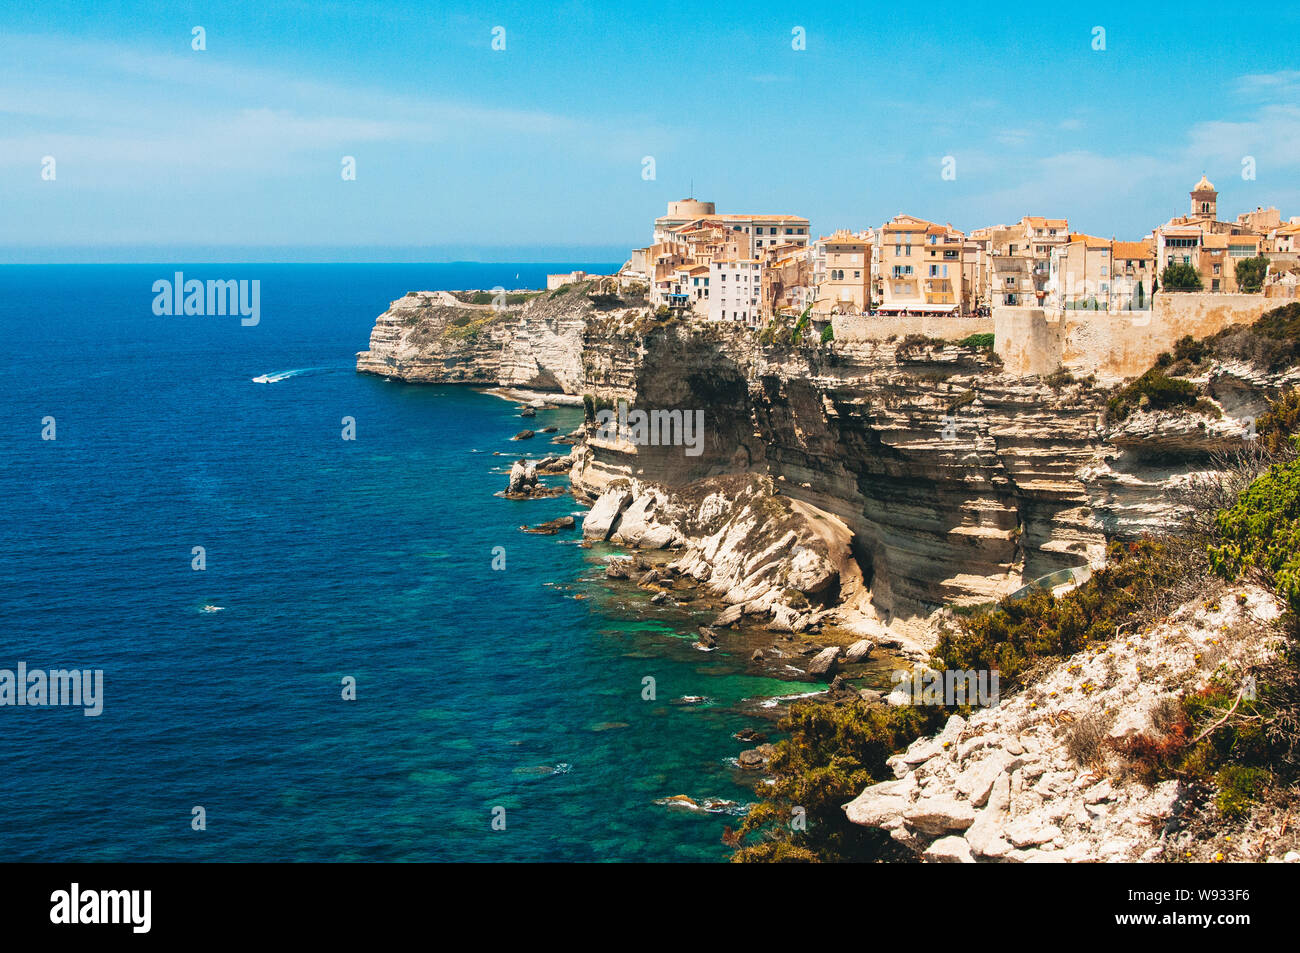 Las casas antiguas y la ciudad construida en el borde de los altos acantilados de Bonifacio, en el mar mediterráneo de la Córcega Foto de stock